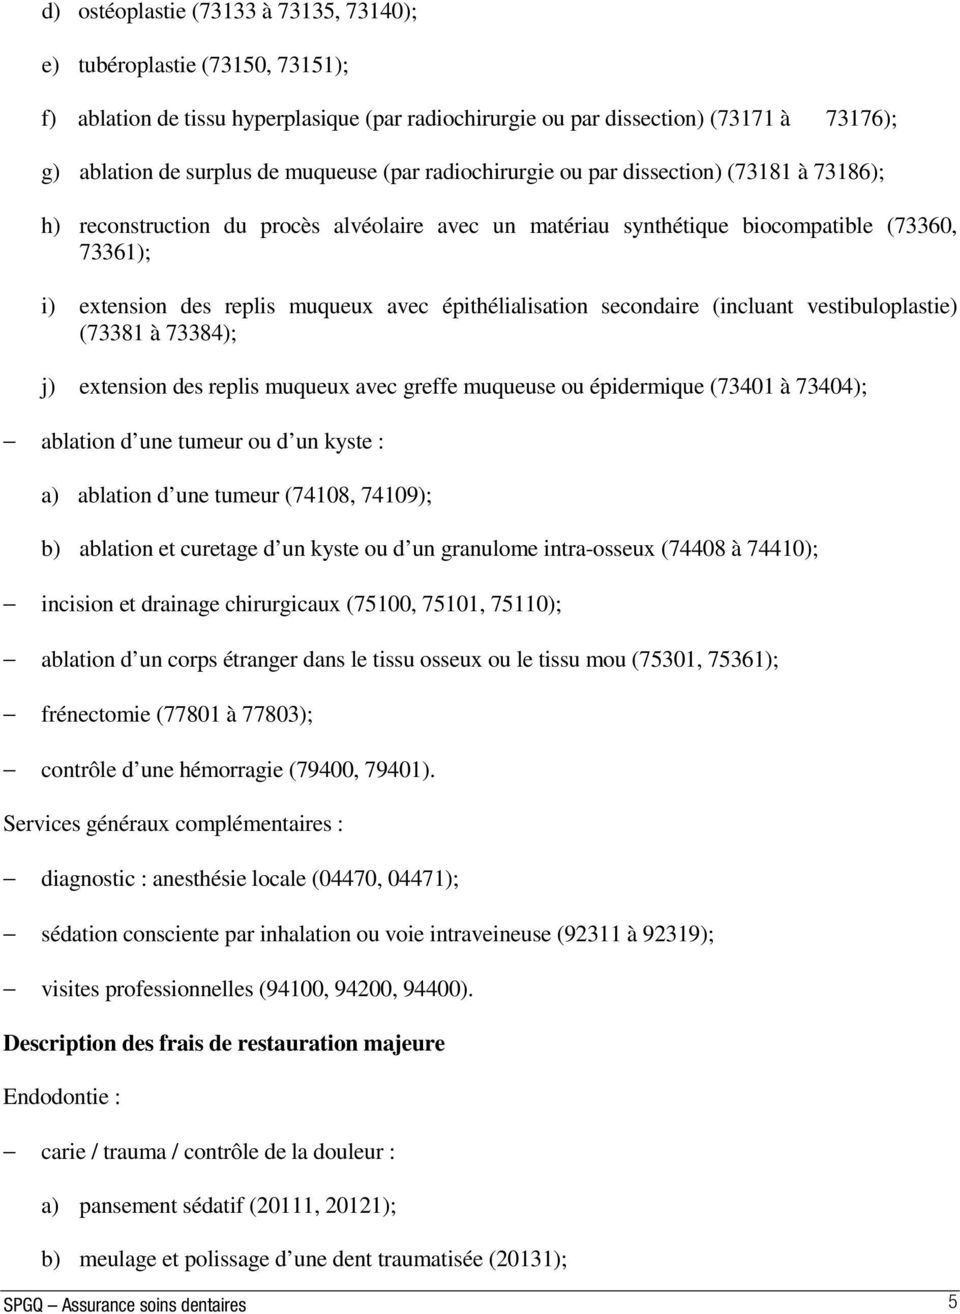 épithélialisation secondaire (incluant vestibuloplastie) (73381 à 73384); j) extension des replis muqueux avec greffe muqueuse ou épidermique (73401 à 73404); ablation d une tumeur ou d un kyste : a)